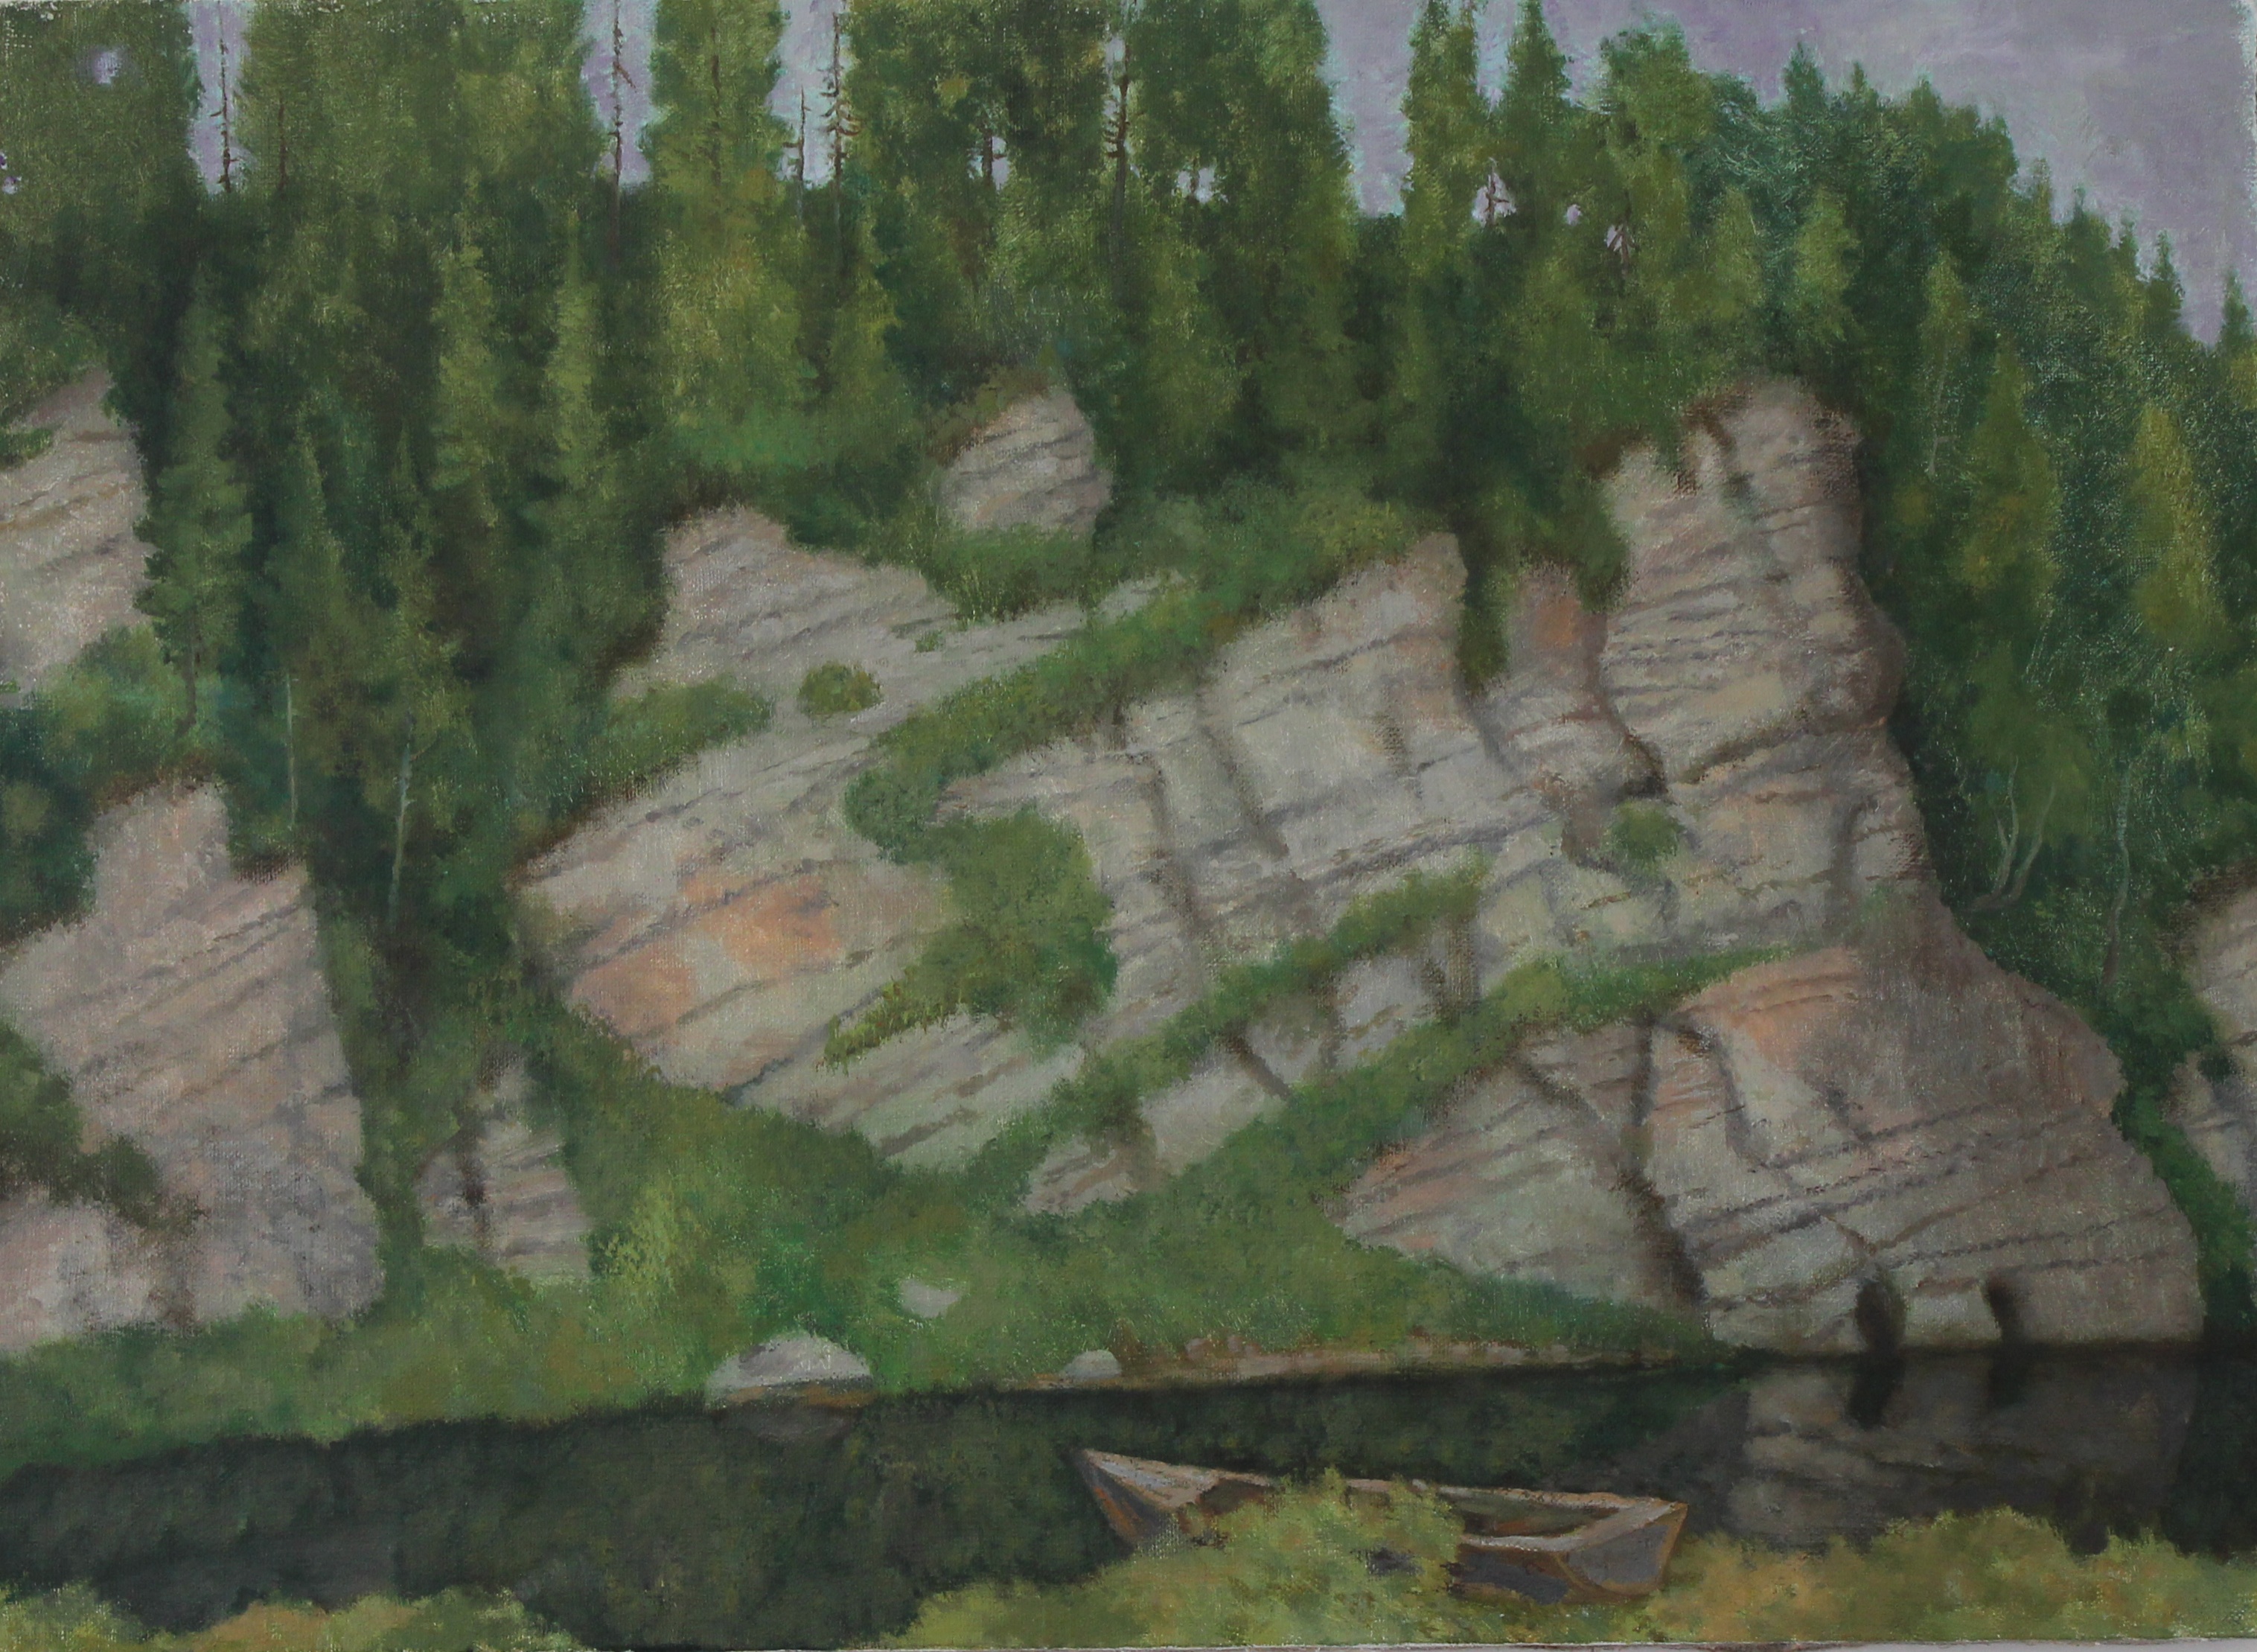 The bank of the Chusovaya River - 1, Mary Dobrovolskaya, 买画 油